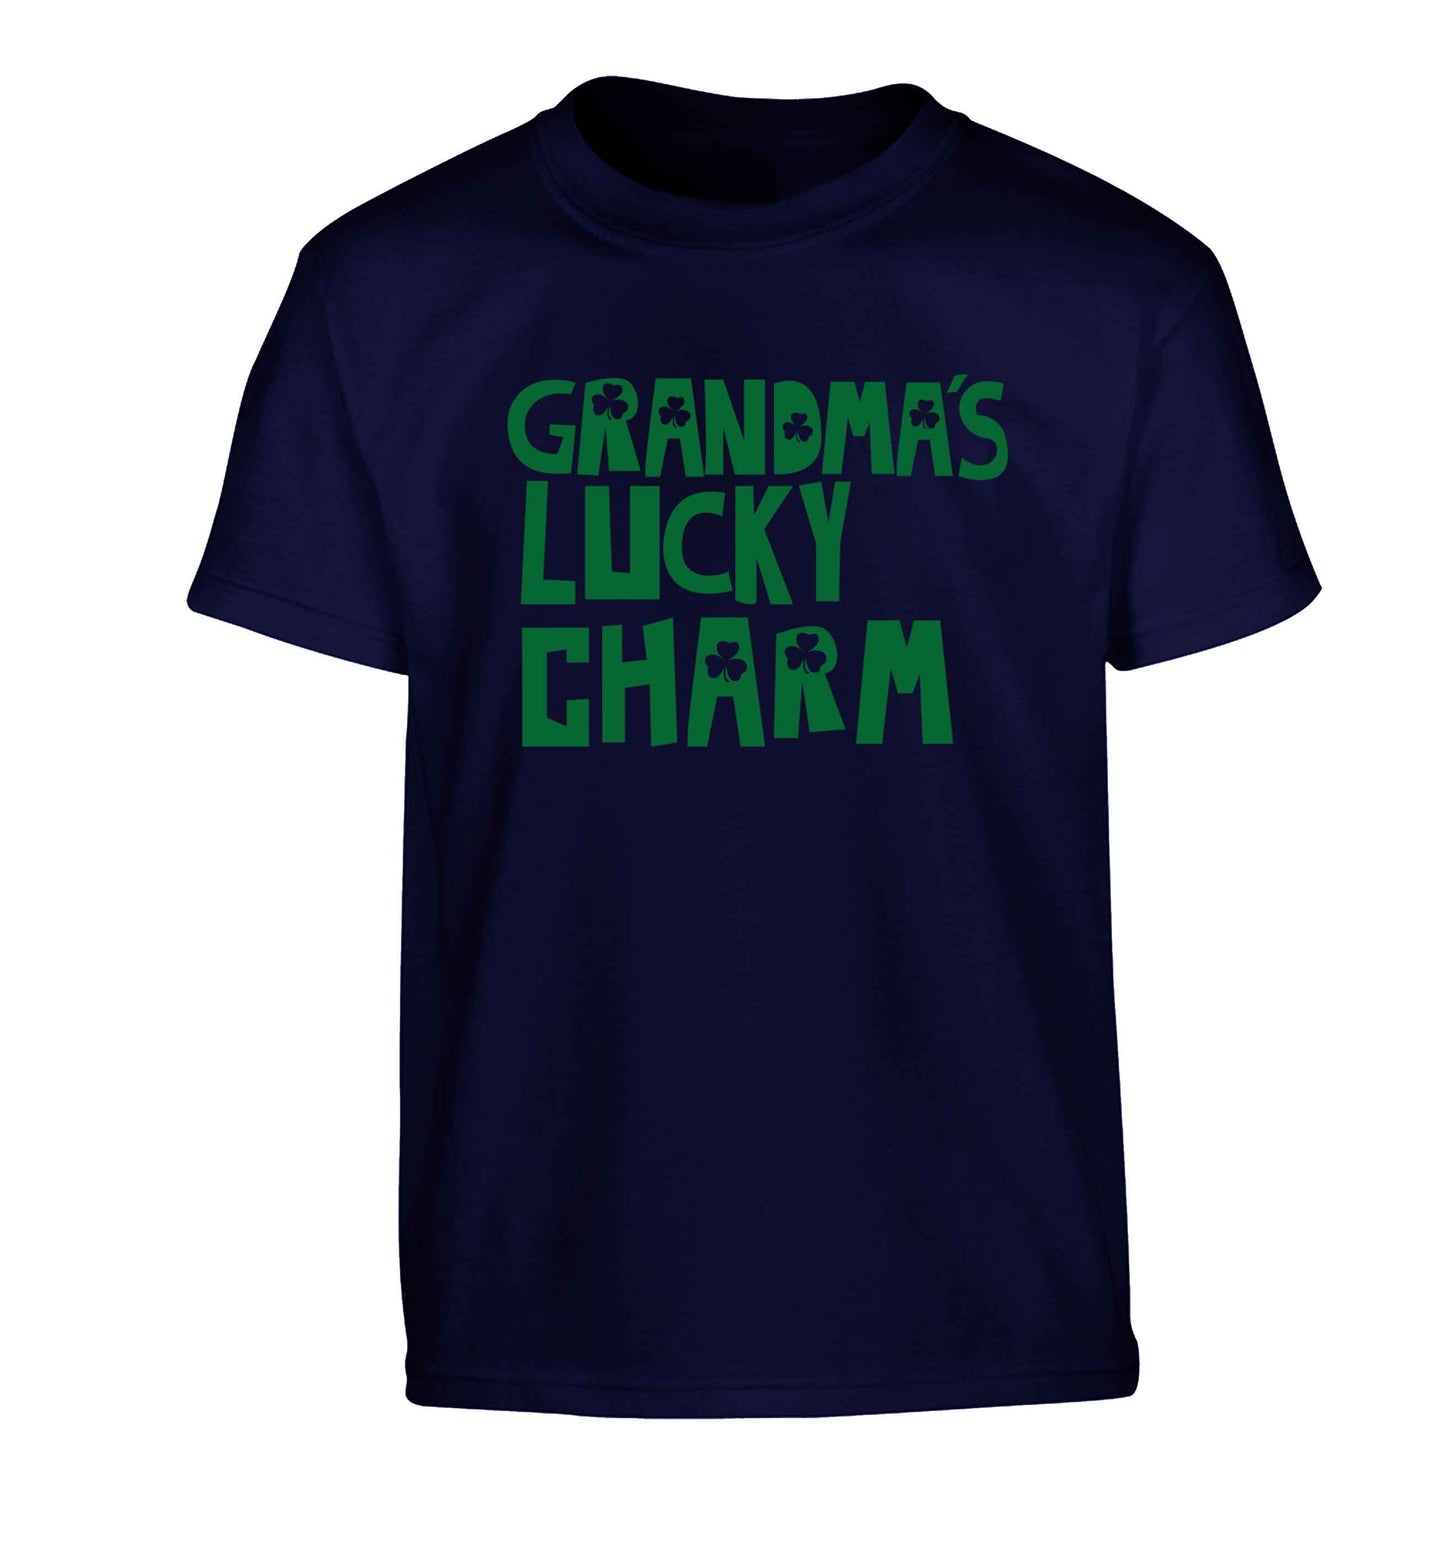 Grandma's lucky charm Children's navy Tshirt 12-13 Years